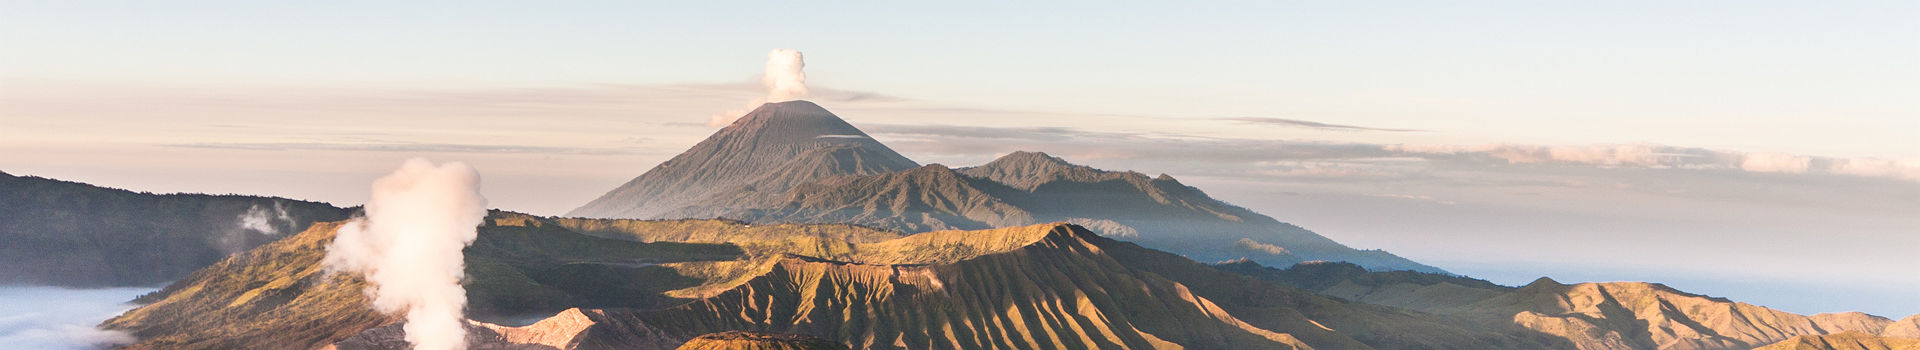 Indonésie - Volcans mont Bromo et mont Sumero à Java